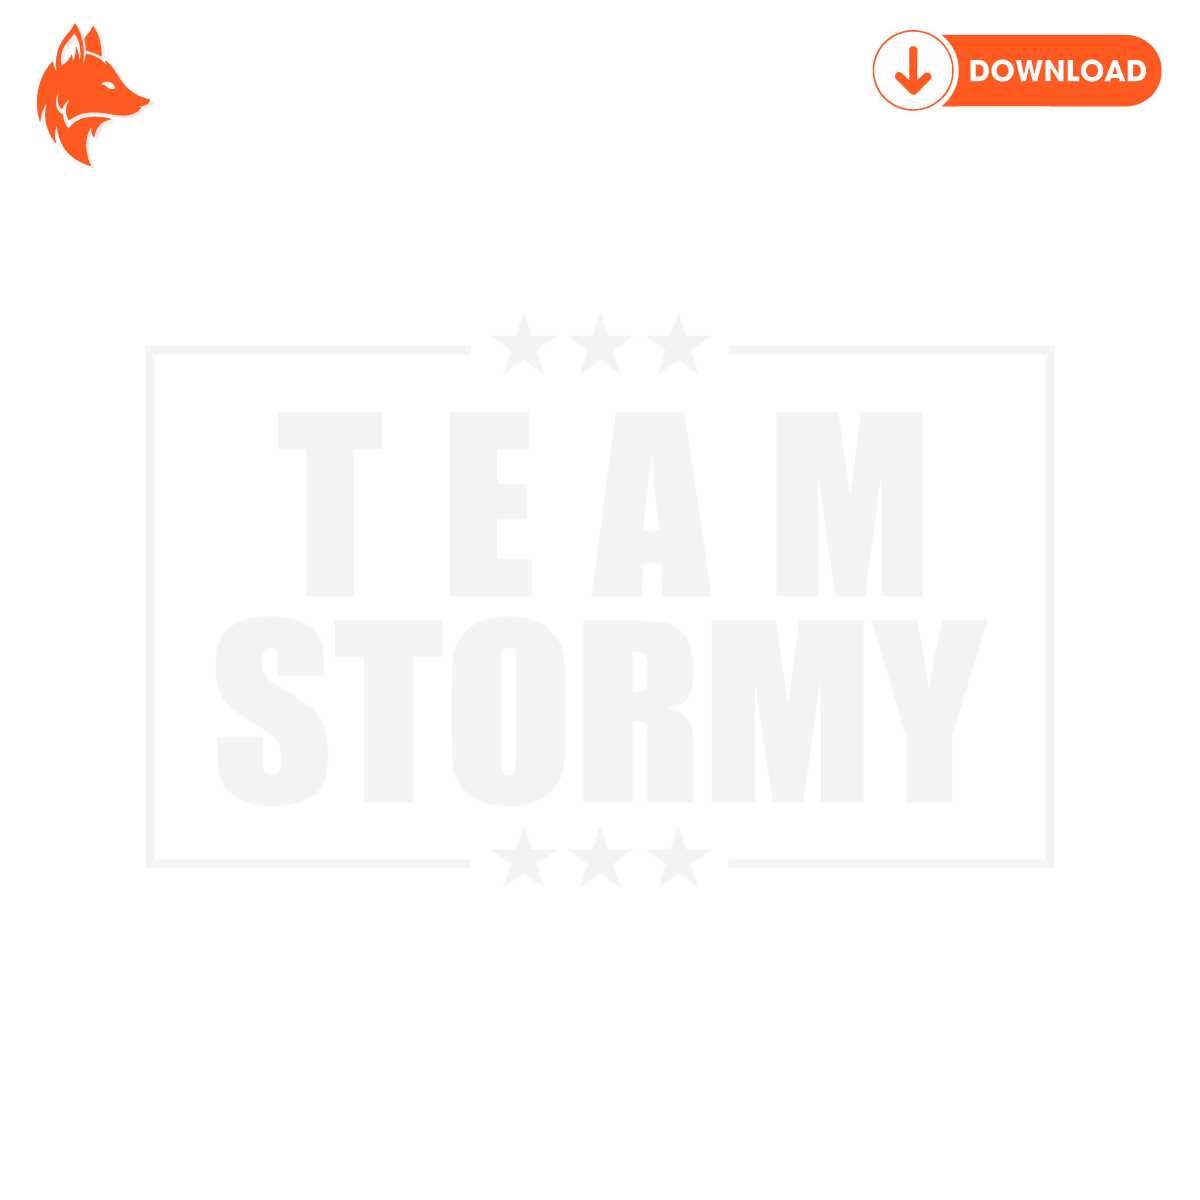 Funny Team Stormy Daniels SVG